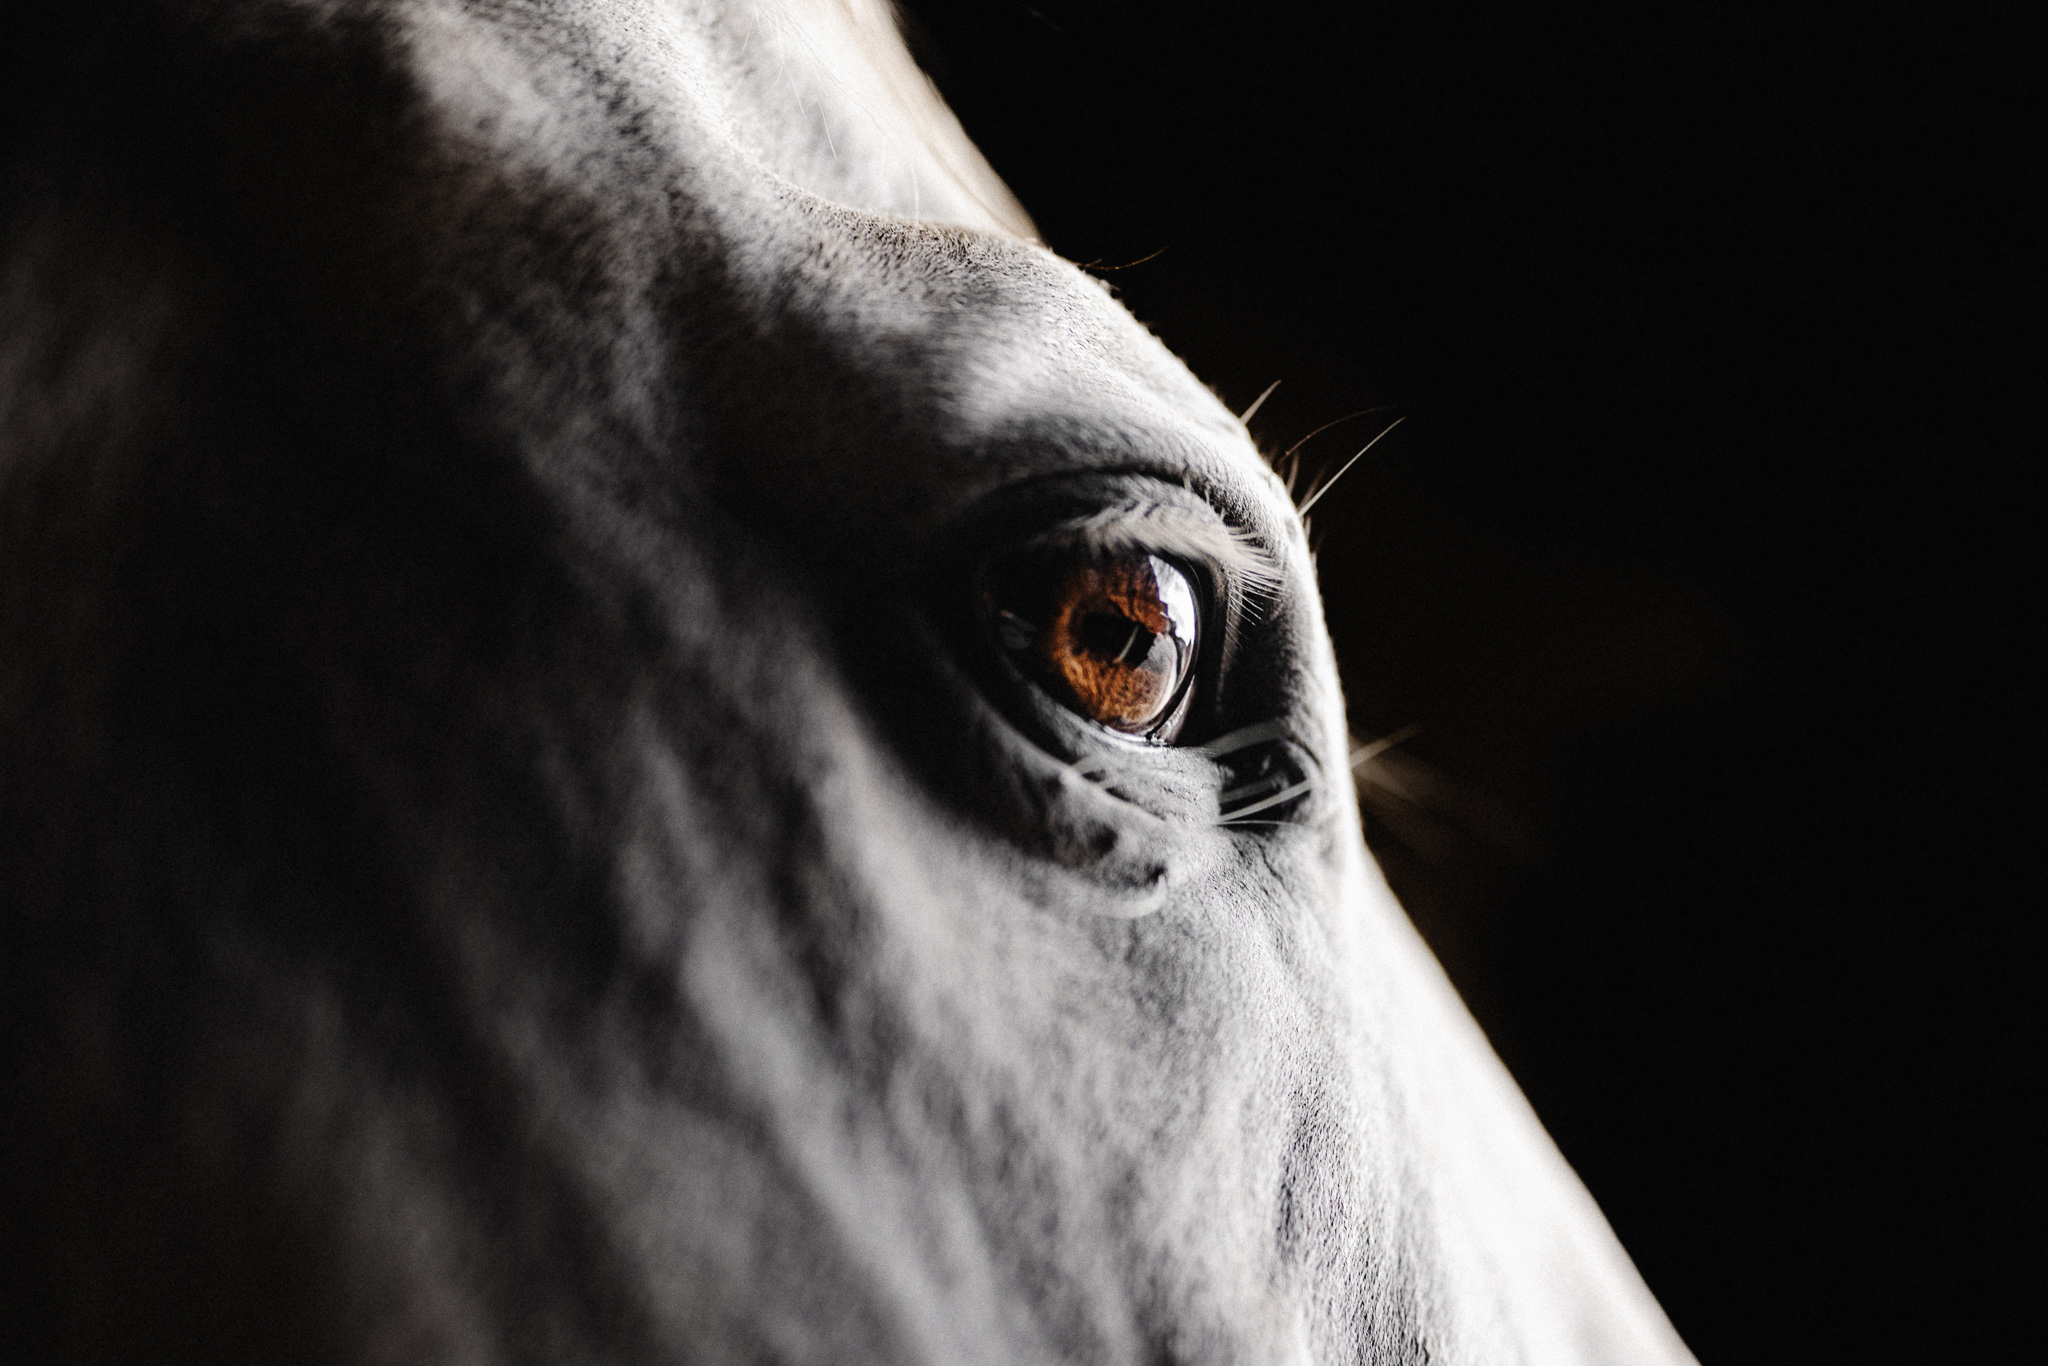 Eine Nahaufnahme des Auges eines weißen Pferdes.